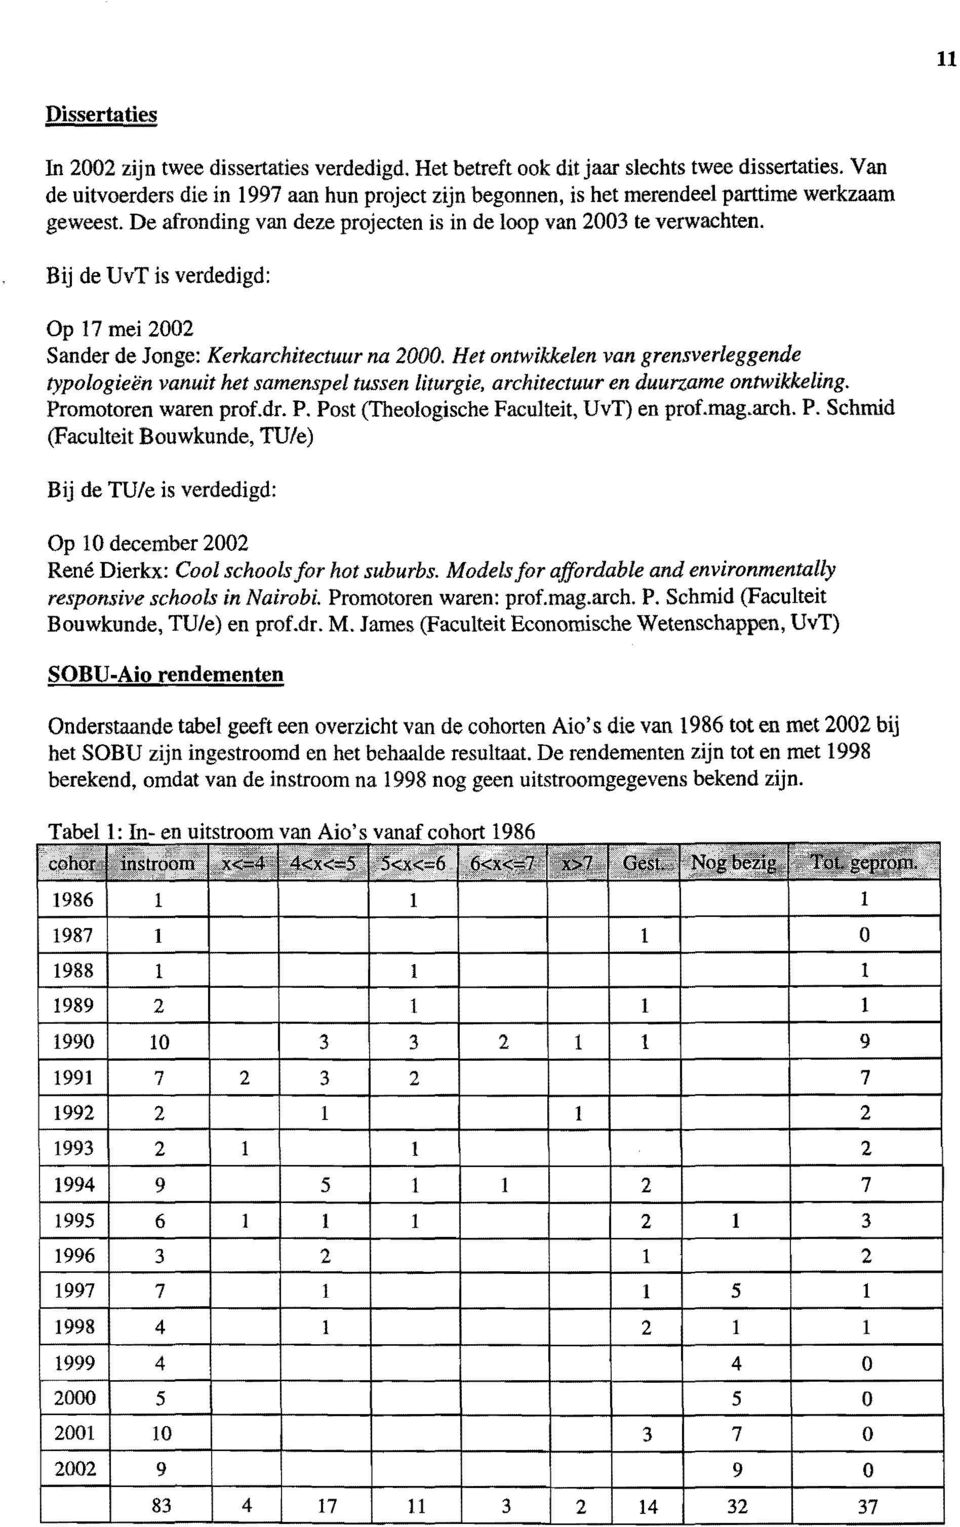 Bij de UvT is verdedigd: Op 17 mei 2002 Sander de Jonge: Kerkarchitectuur na 2000.